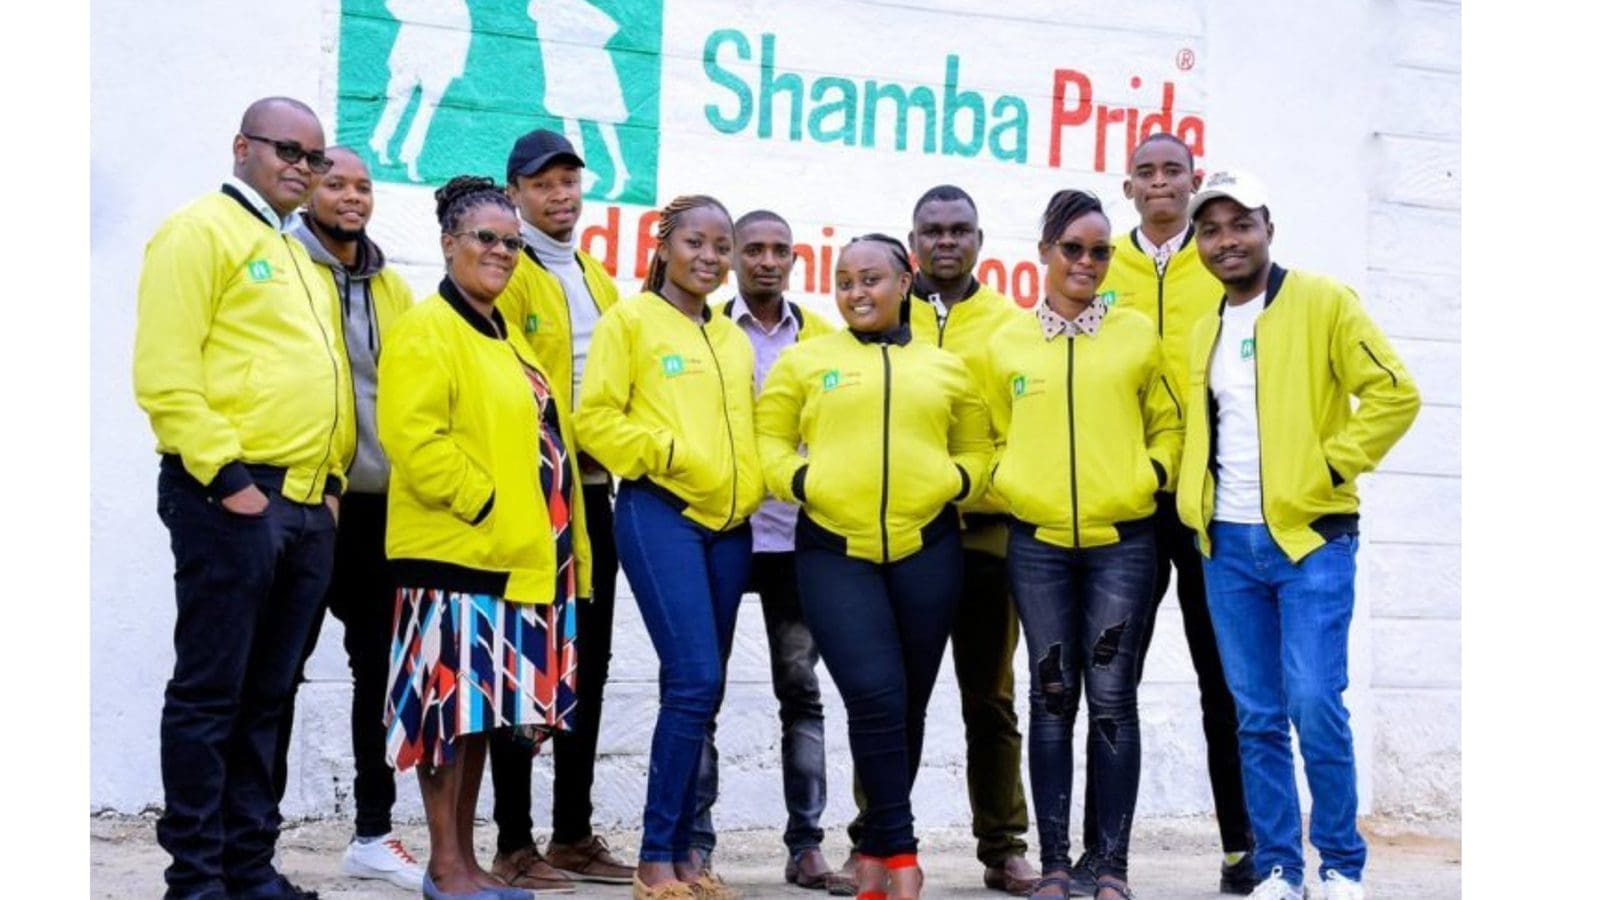 Kenyan agri-tech startup Shamba Pride raises US$1.1m funding round to finance expansion plan